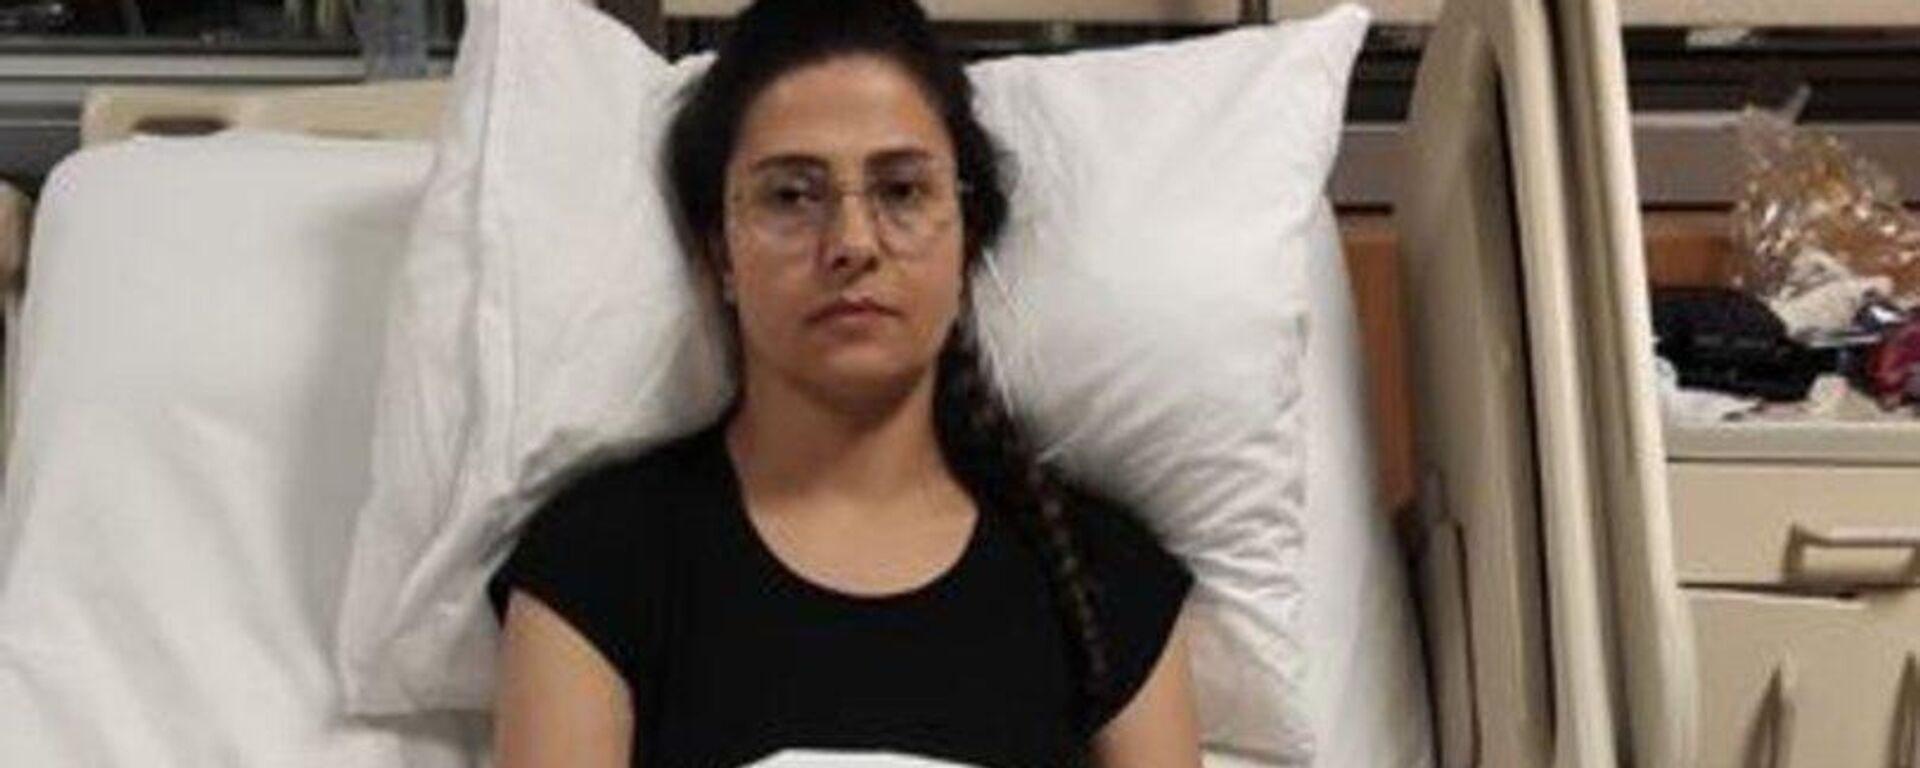 Ağrıları dinsin diye özel hastanede iğne vurduran kadın tekerlekli sandalyeye mahkum oldu - Sputnik Türkiye, 1920, 26.12.2022